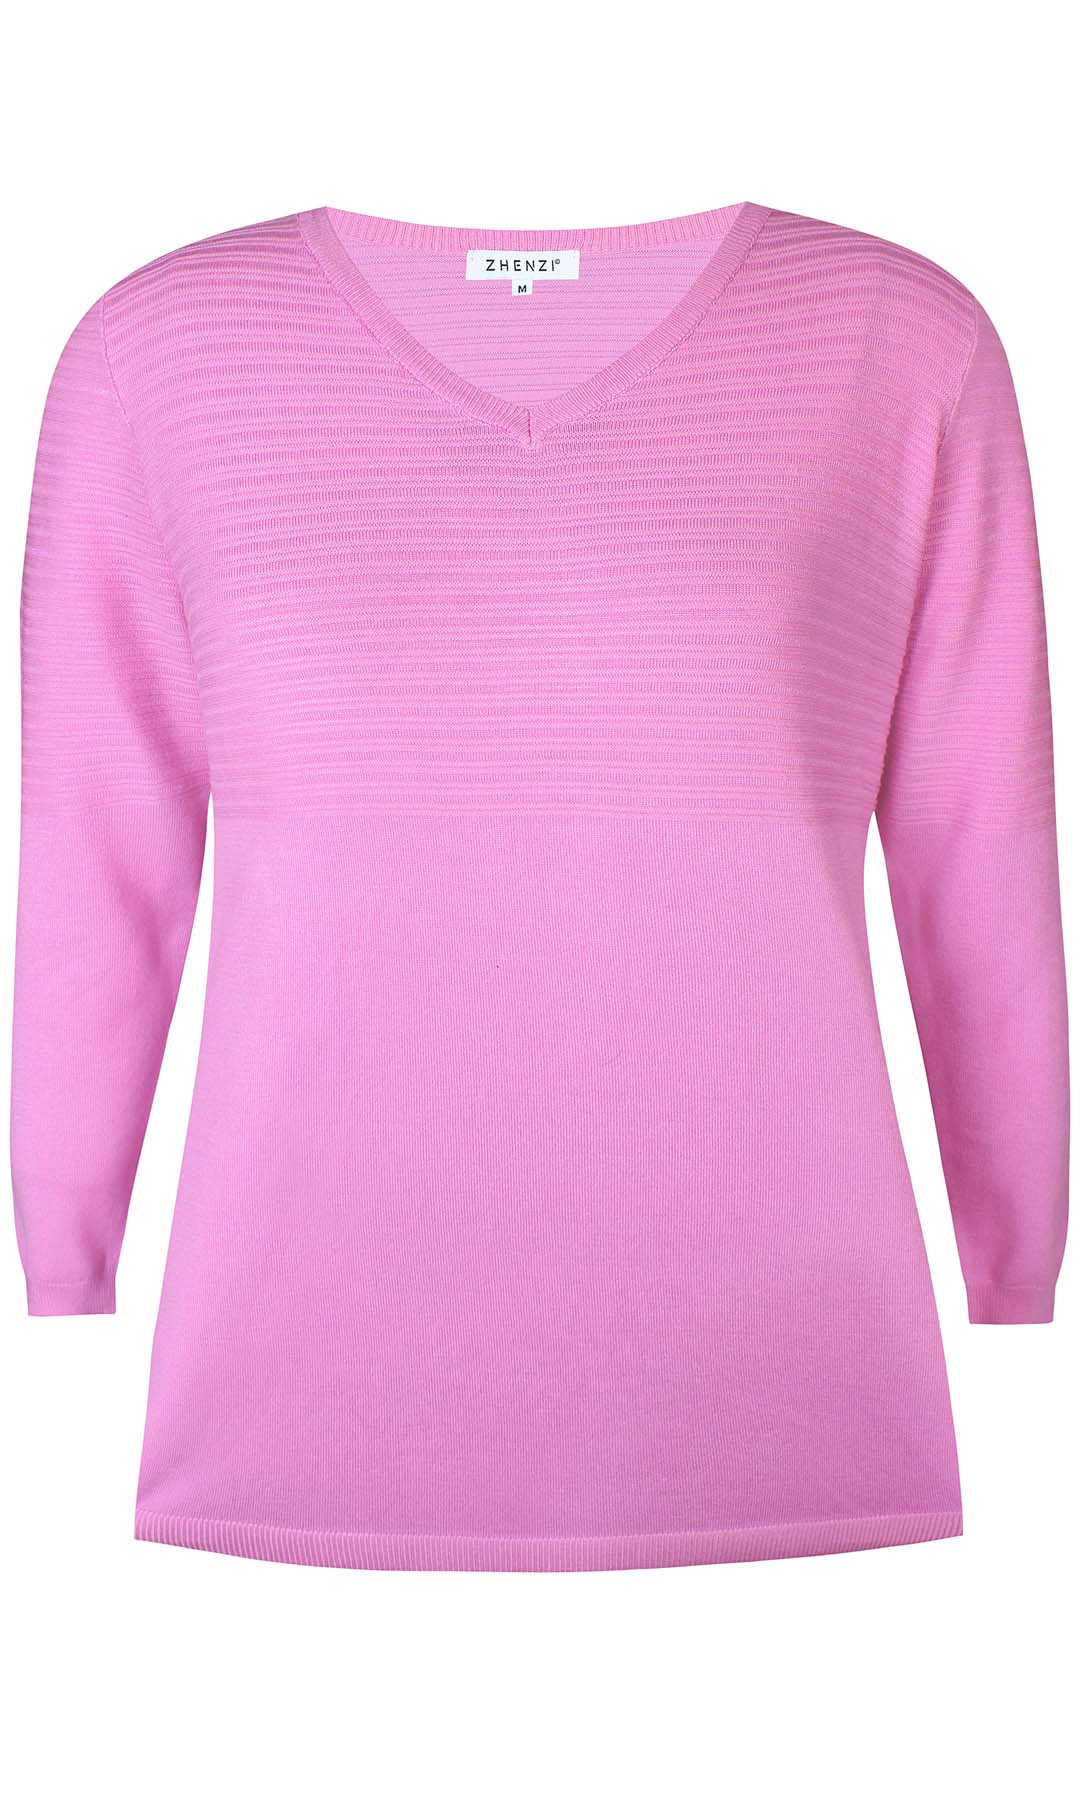 Kogle 085 - Pullover - Pink